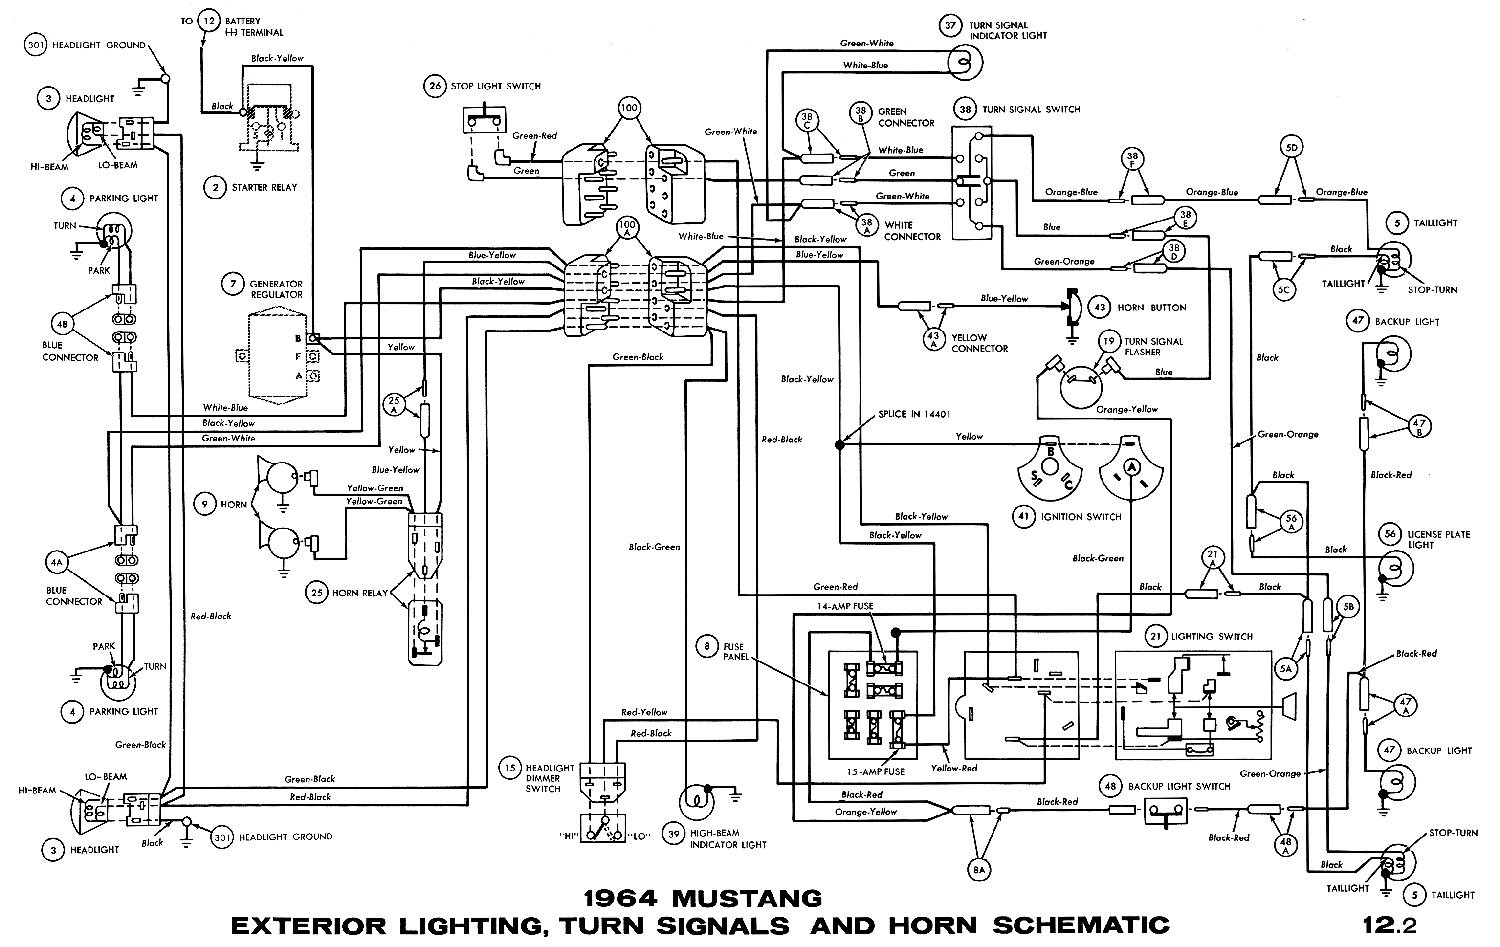 1965 mustang wiring diagram pdf enthusiast wiring diagrams u2022 rh rasalibre co 65 mustang wiring diagram